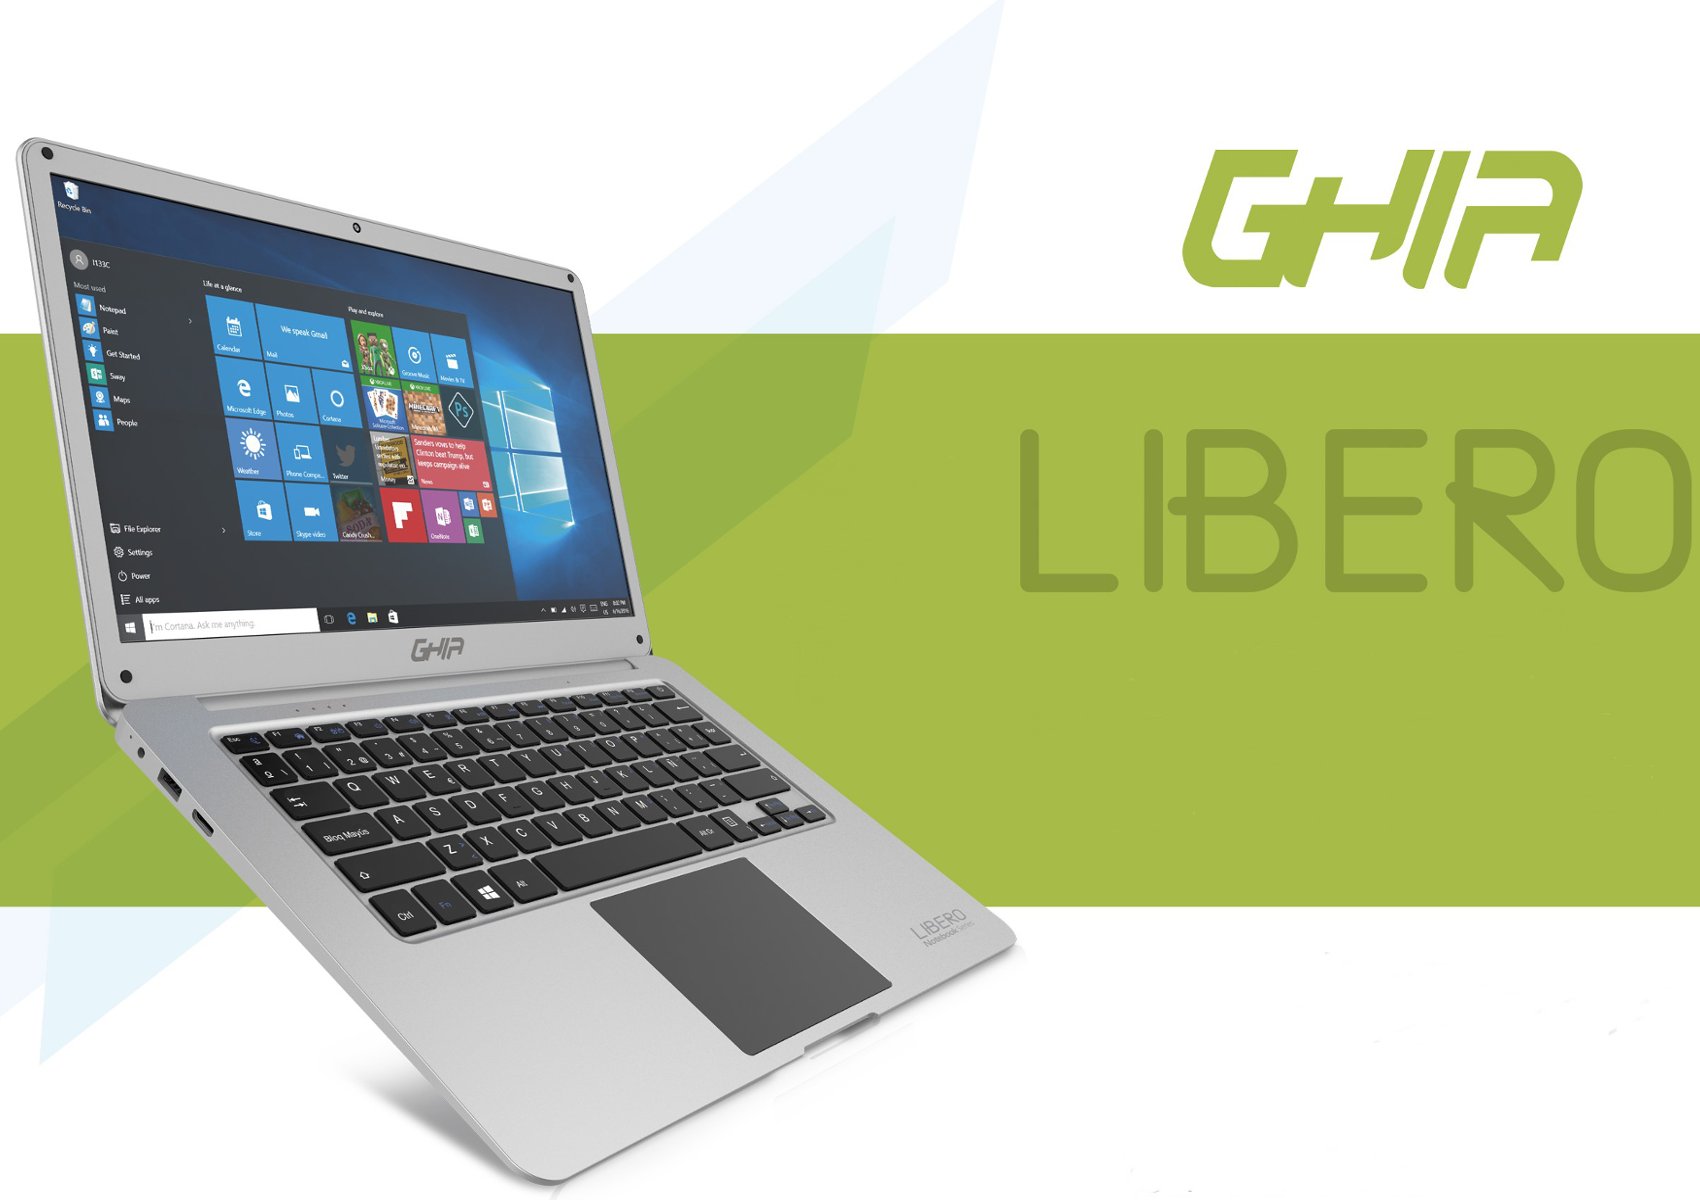 Laptop Ghia Libreo - Conectividad y diversión